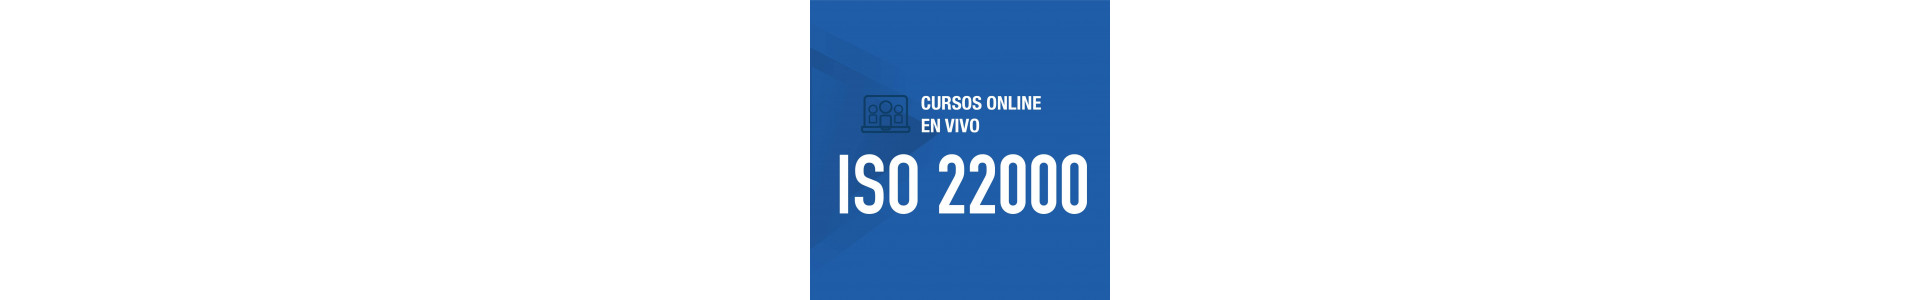 Cursos online | ISO 22000